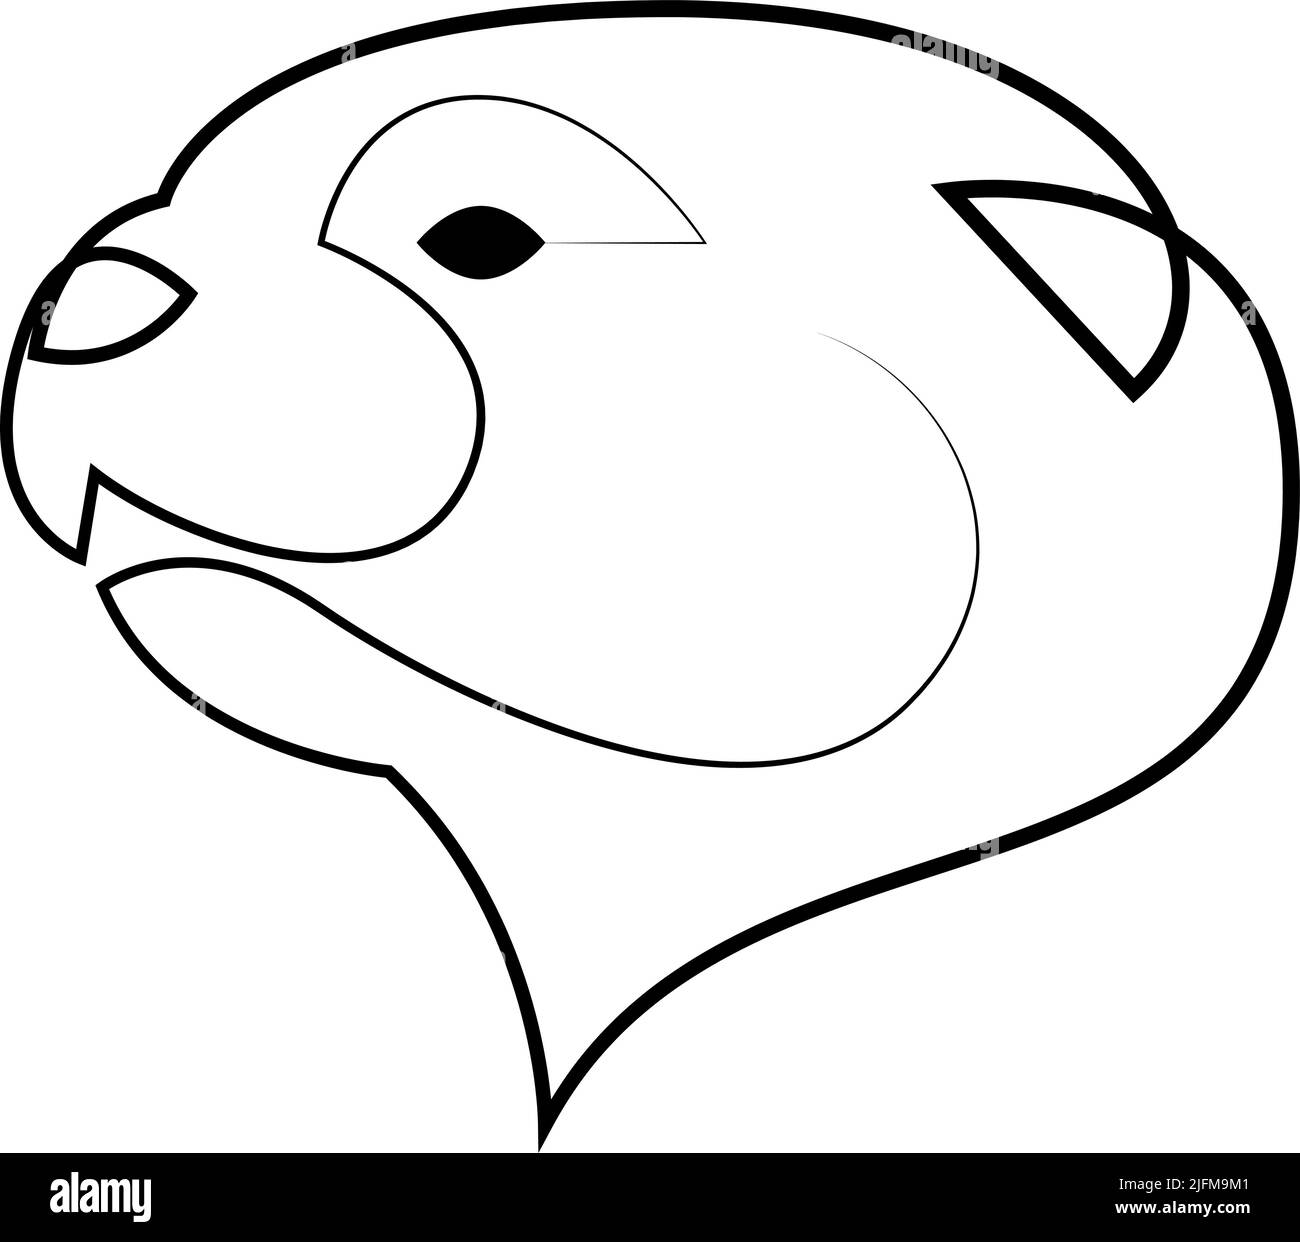 Eine einzelne fortlaufende Linienzeichnung des Otters für die Logo-Identität. Otter Tier Maskottchen Konzept. Eine Linie zeichnen Design Vektor Grafik Illustration Stock Vektor